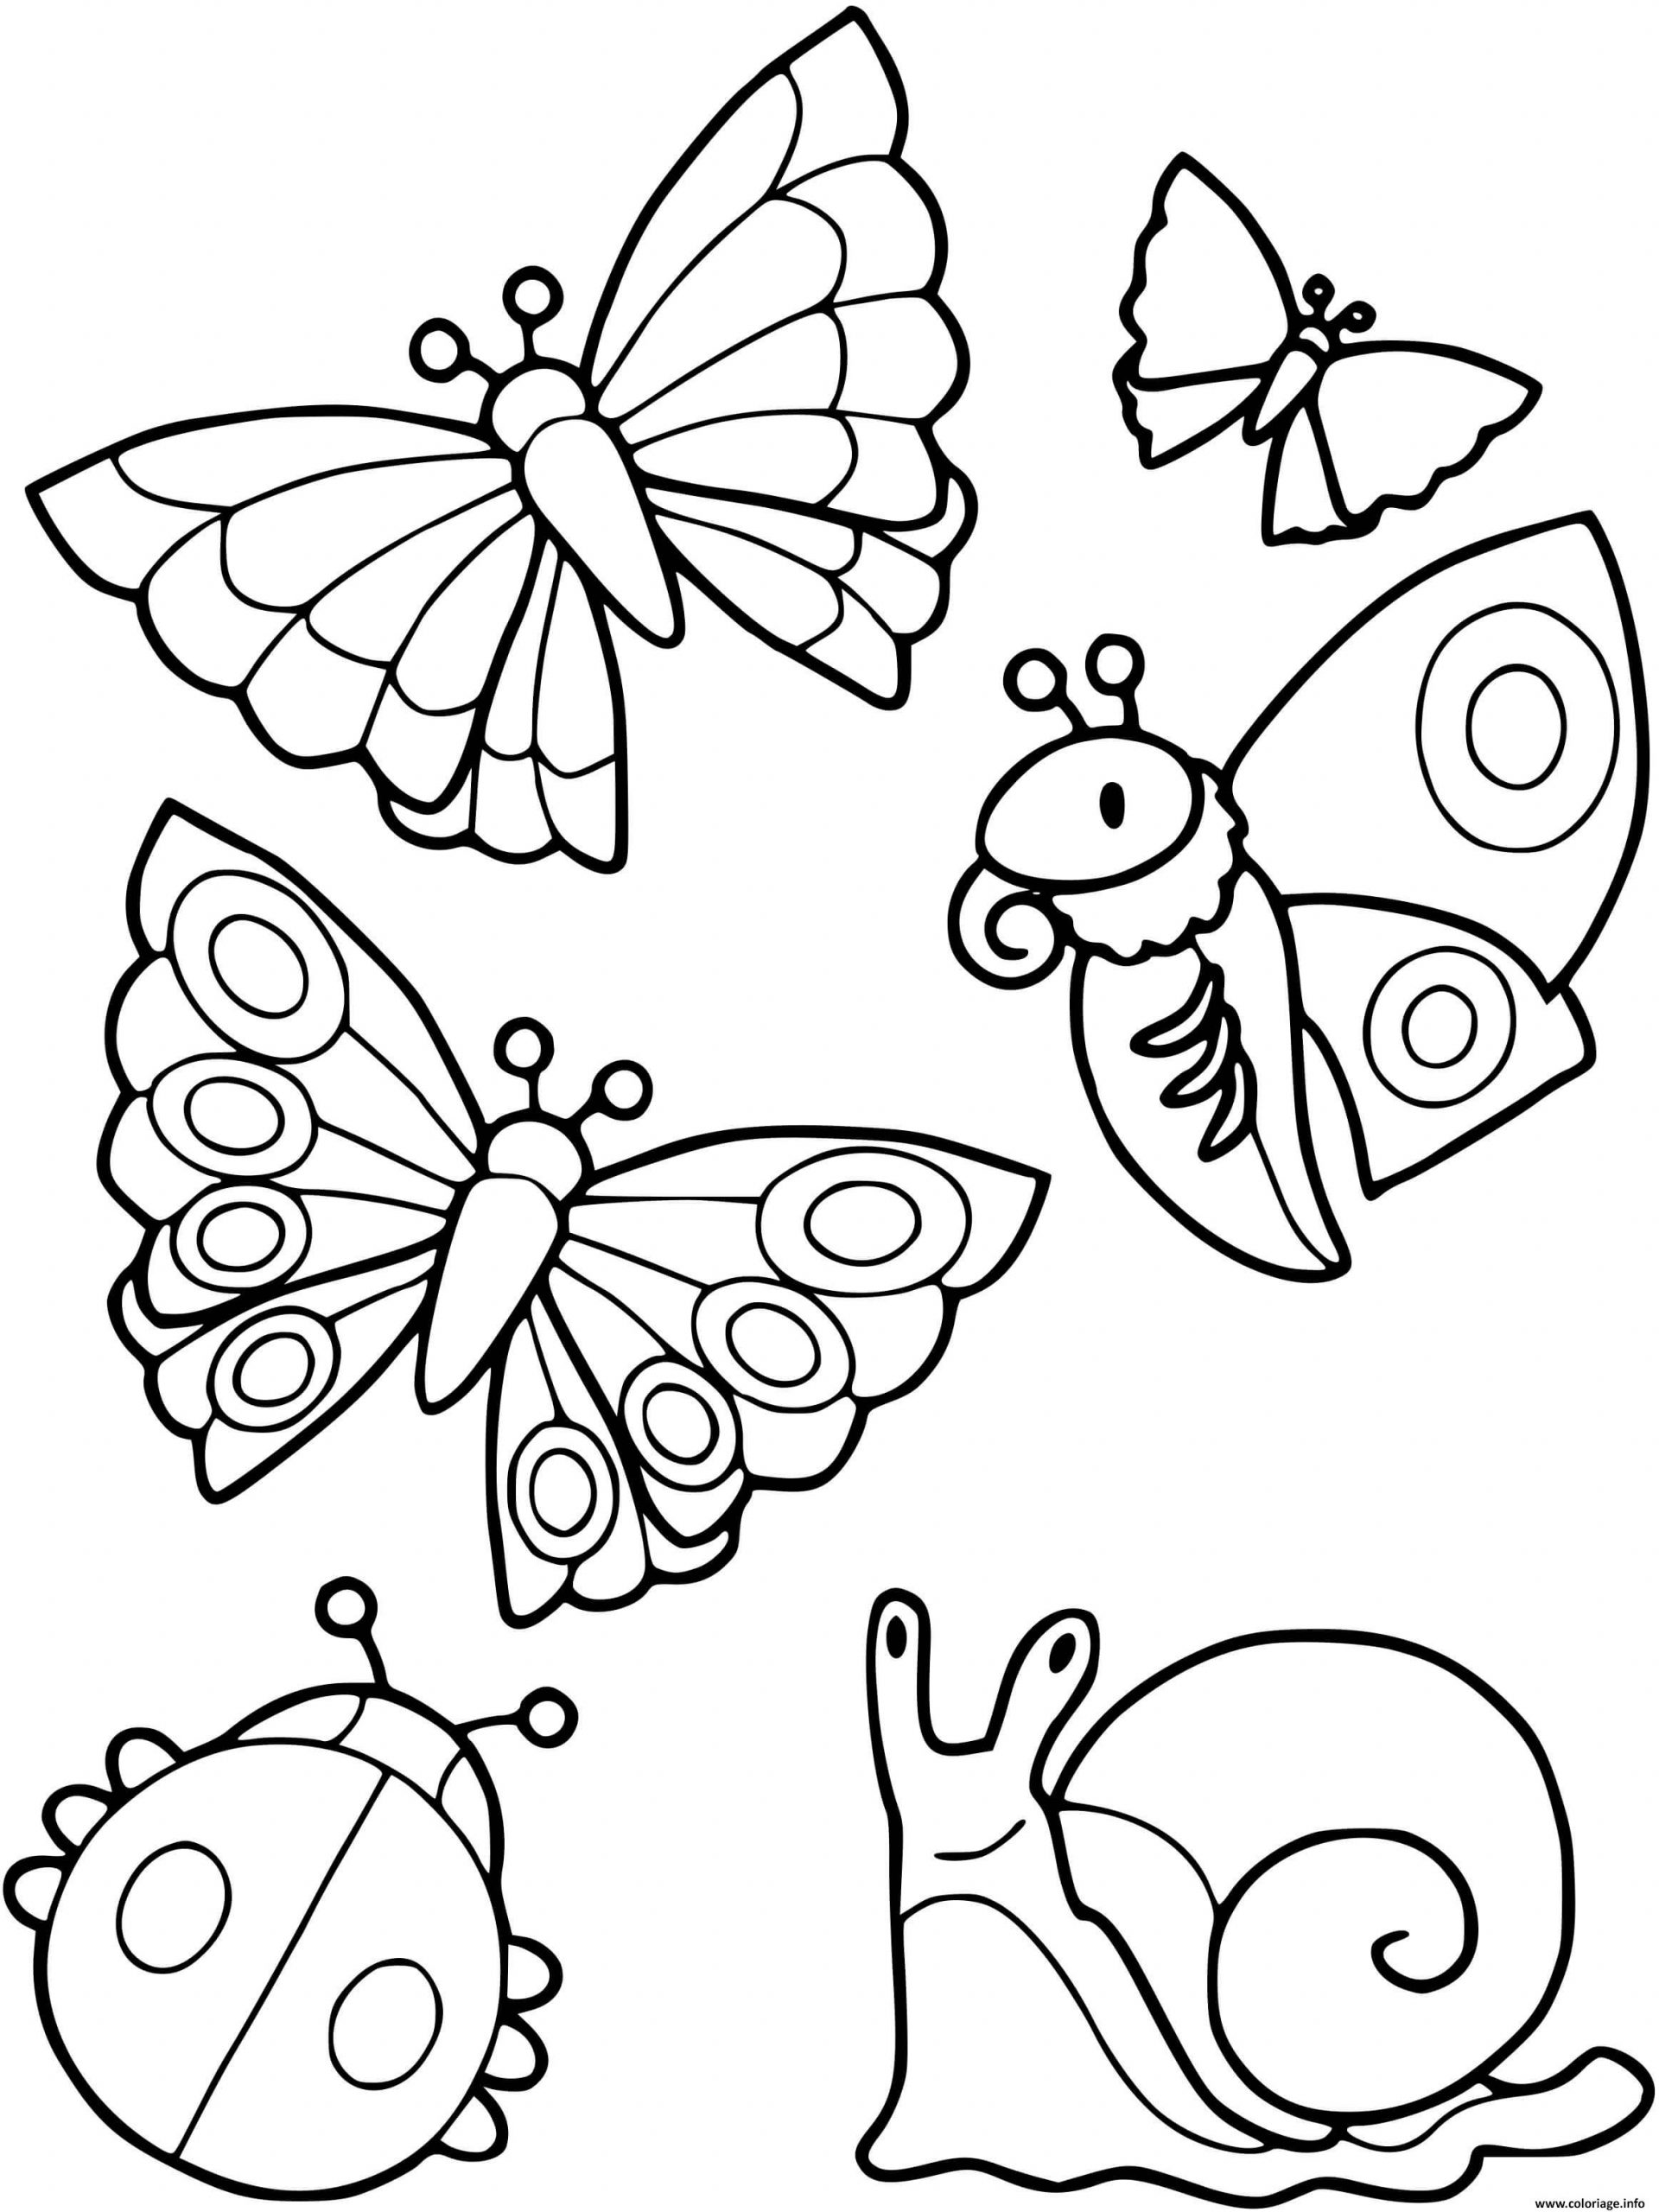 Coloriage Collection De Petites Betes Escargot Papillon Coccinelle encequiconcerne Coloriage De Papillon À Imprimer 